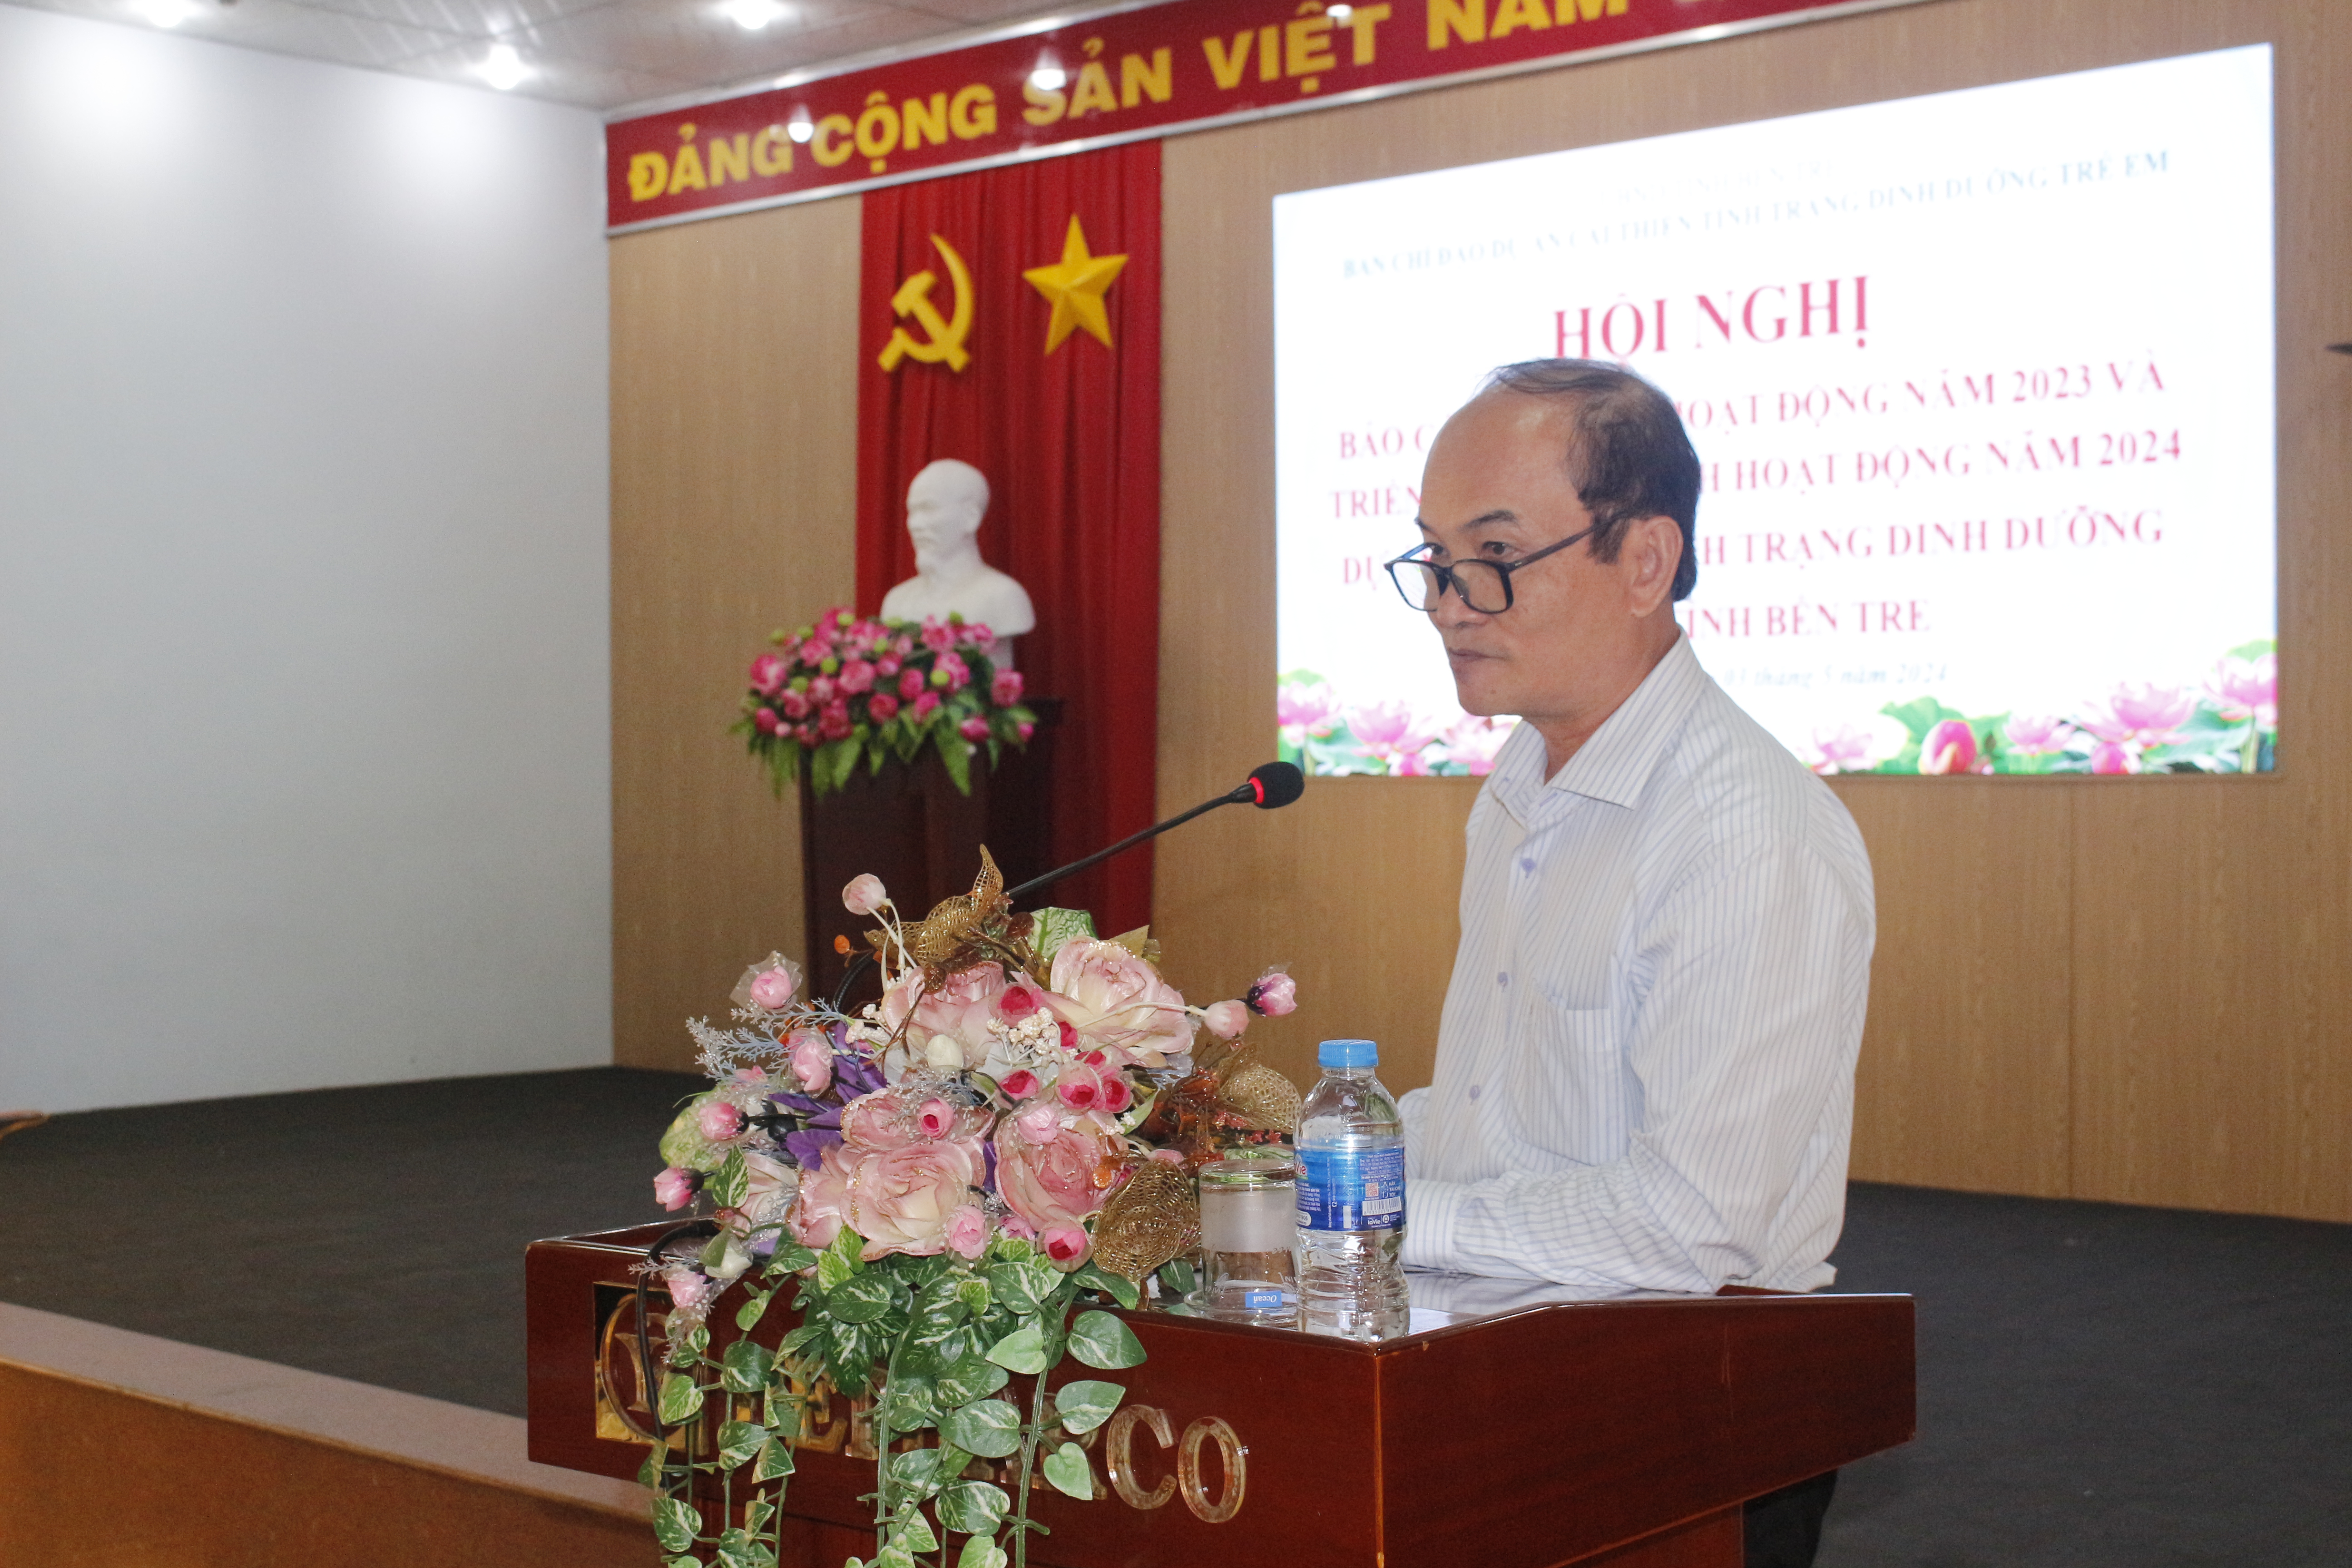 Giám đốc Sở Y tế Nguyễn Văn Oanh - Phó trưởng BCĐ phát biểu chỉ đạo hội nghị.